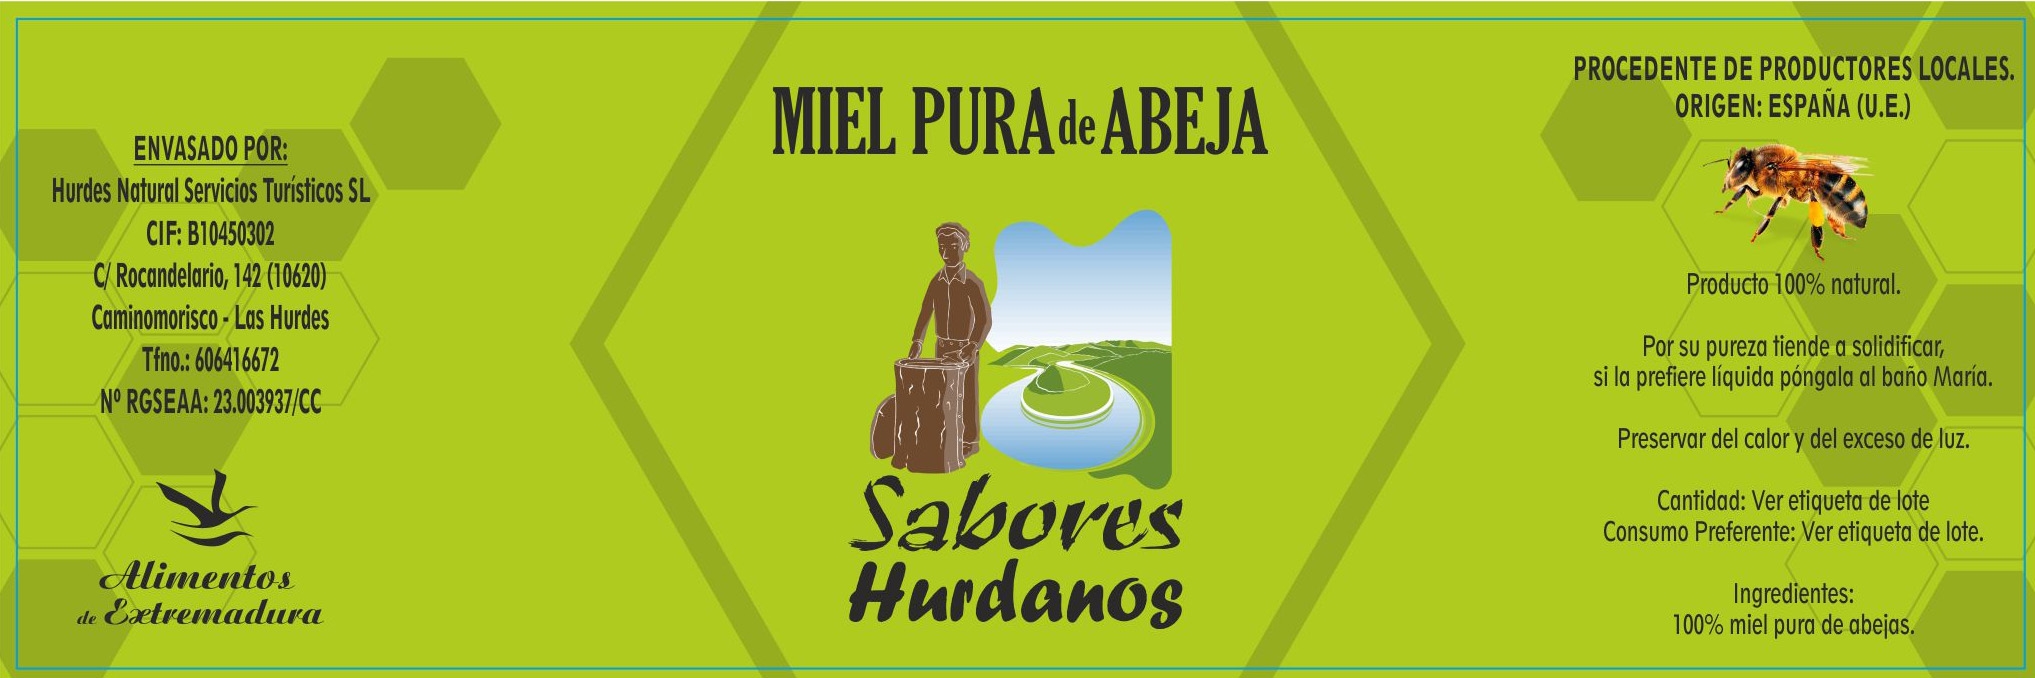 Miel Pura de Abejas Bellota/Roble - Productos Naturales de Las Hurdes.